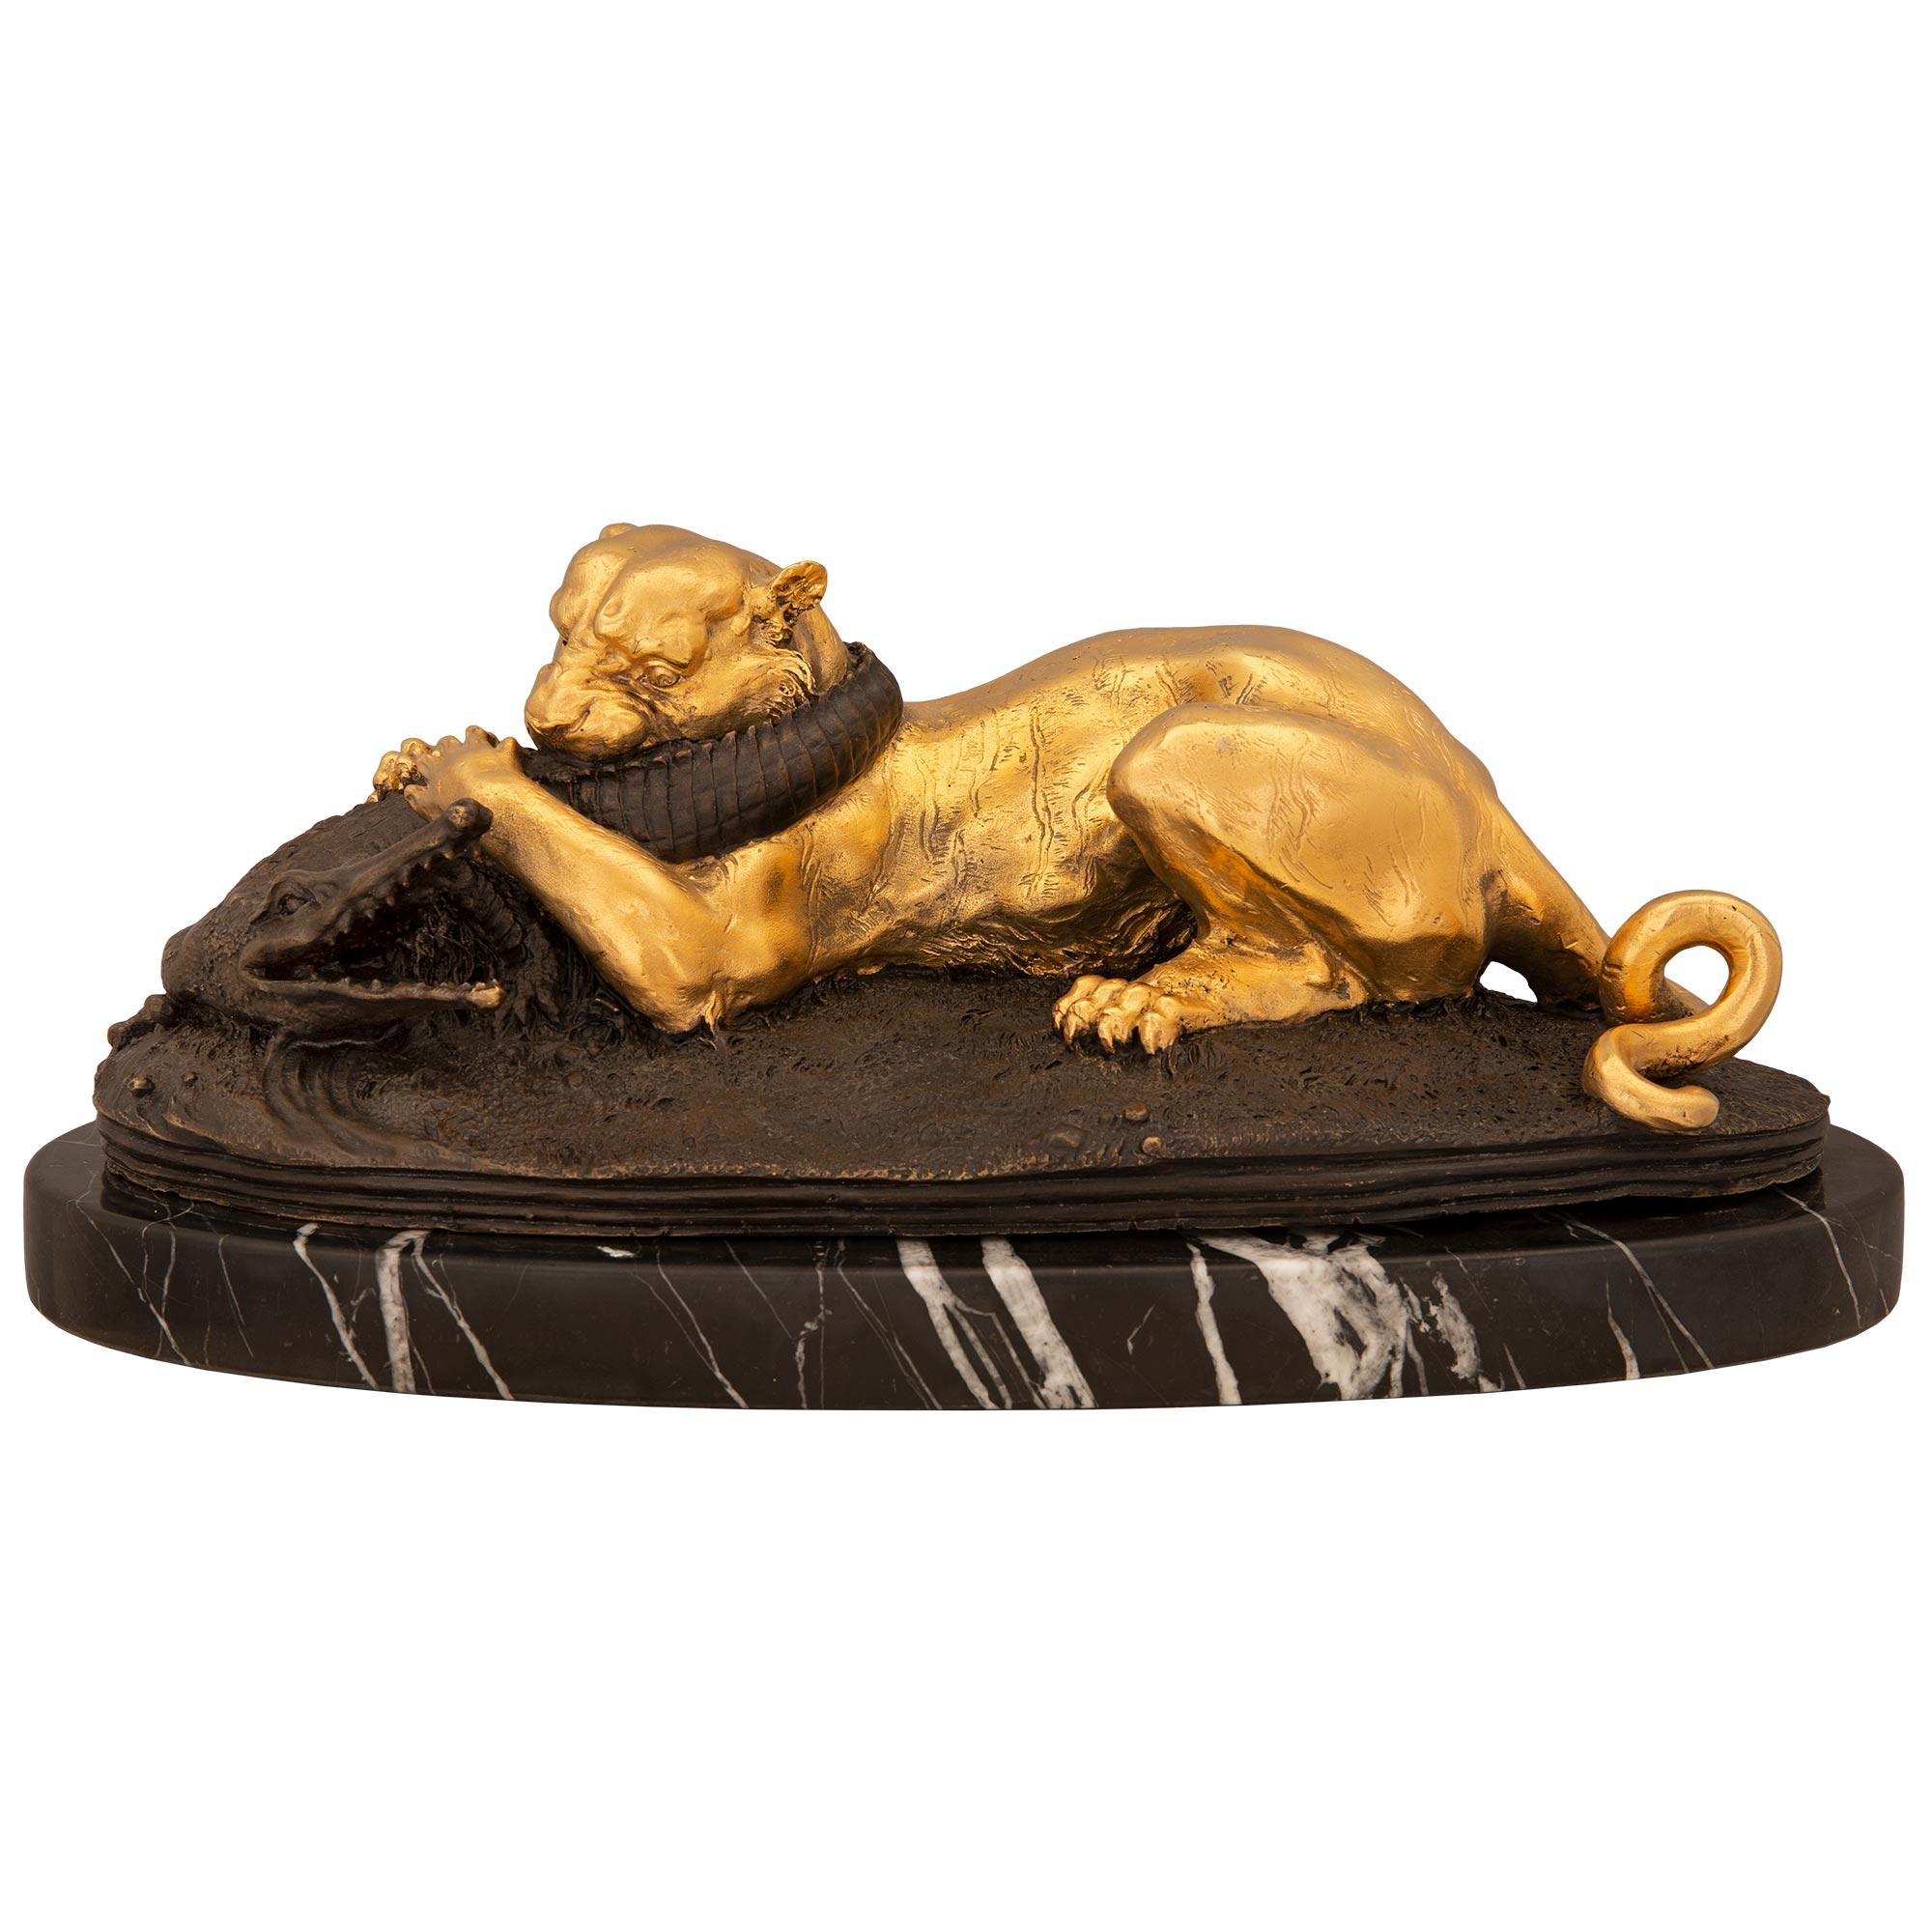 Superbe statue française du XIXe siècle en bronze patiné et bronze doré représentant une panthère mangeant un alligator, signée par Jules Moigniez. La statue est élevée sur une base oblongue avec un dessin au sol merveilleusement exécuté. La